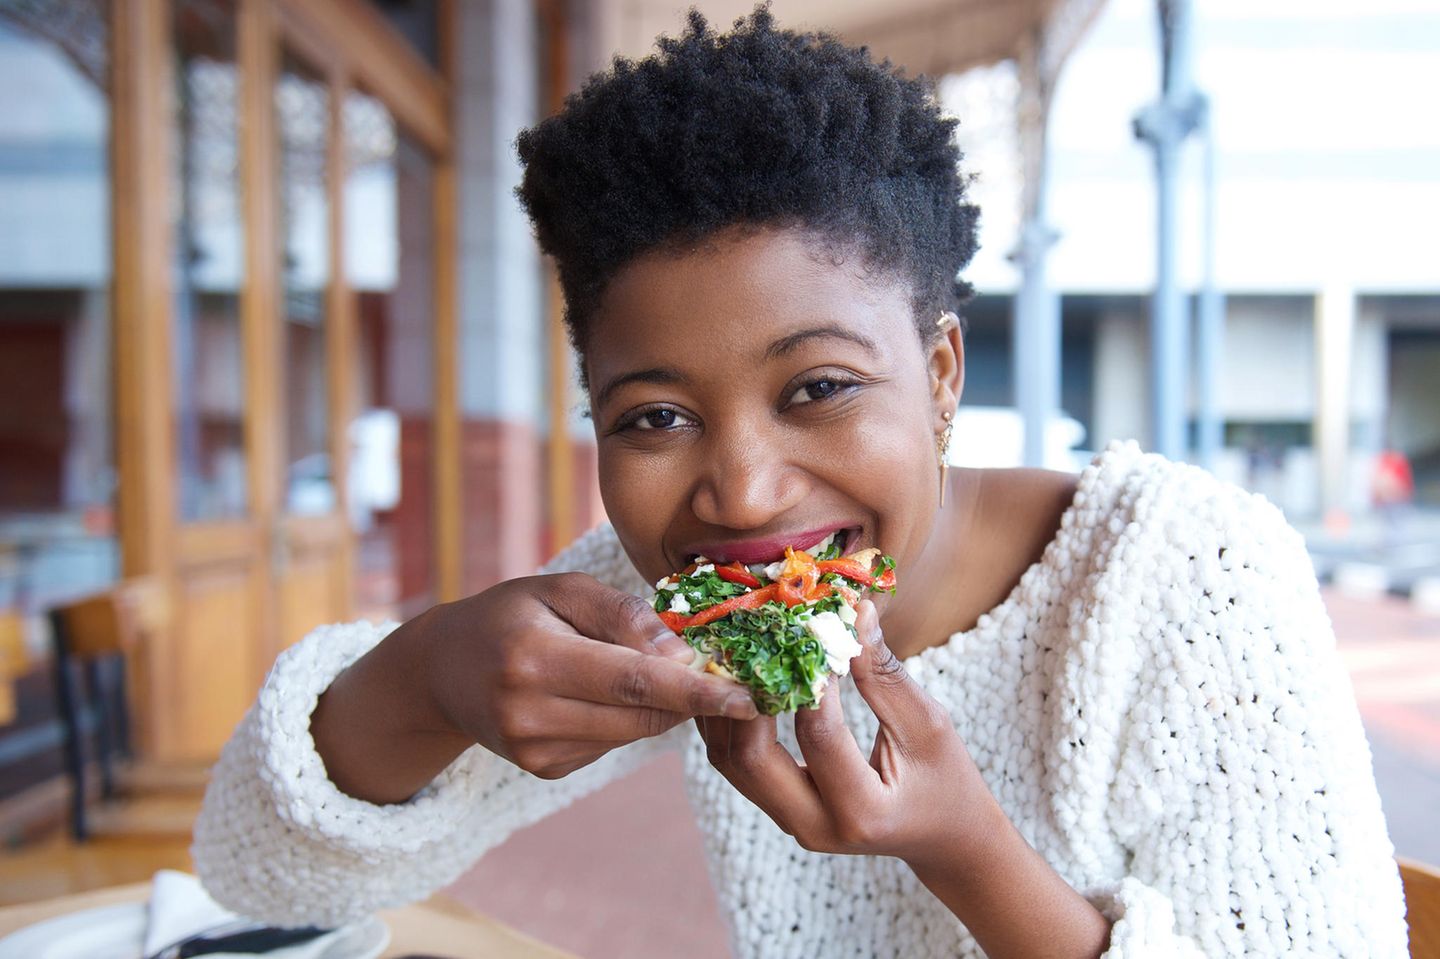 Menschen, die sich vegan ernähren, essen günstiger – zeigt neue Studie: Frau isst veganes Essen